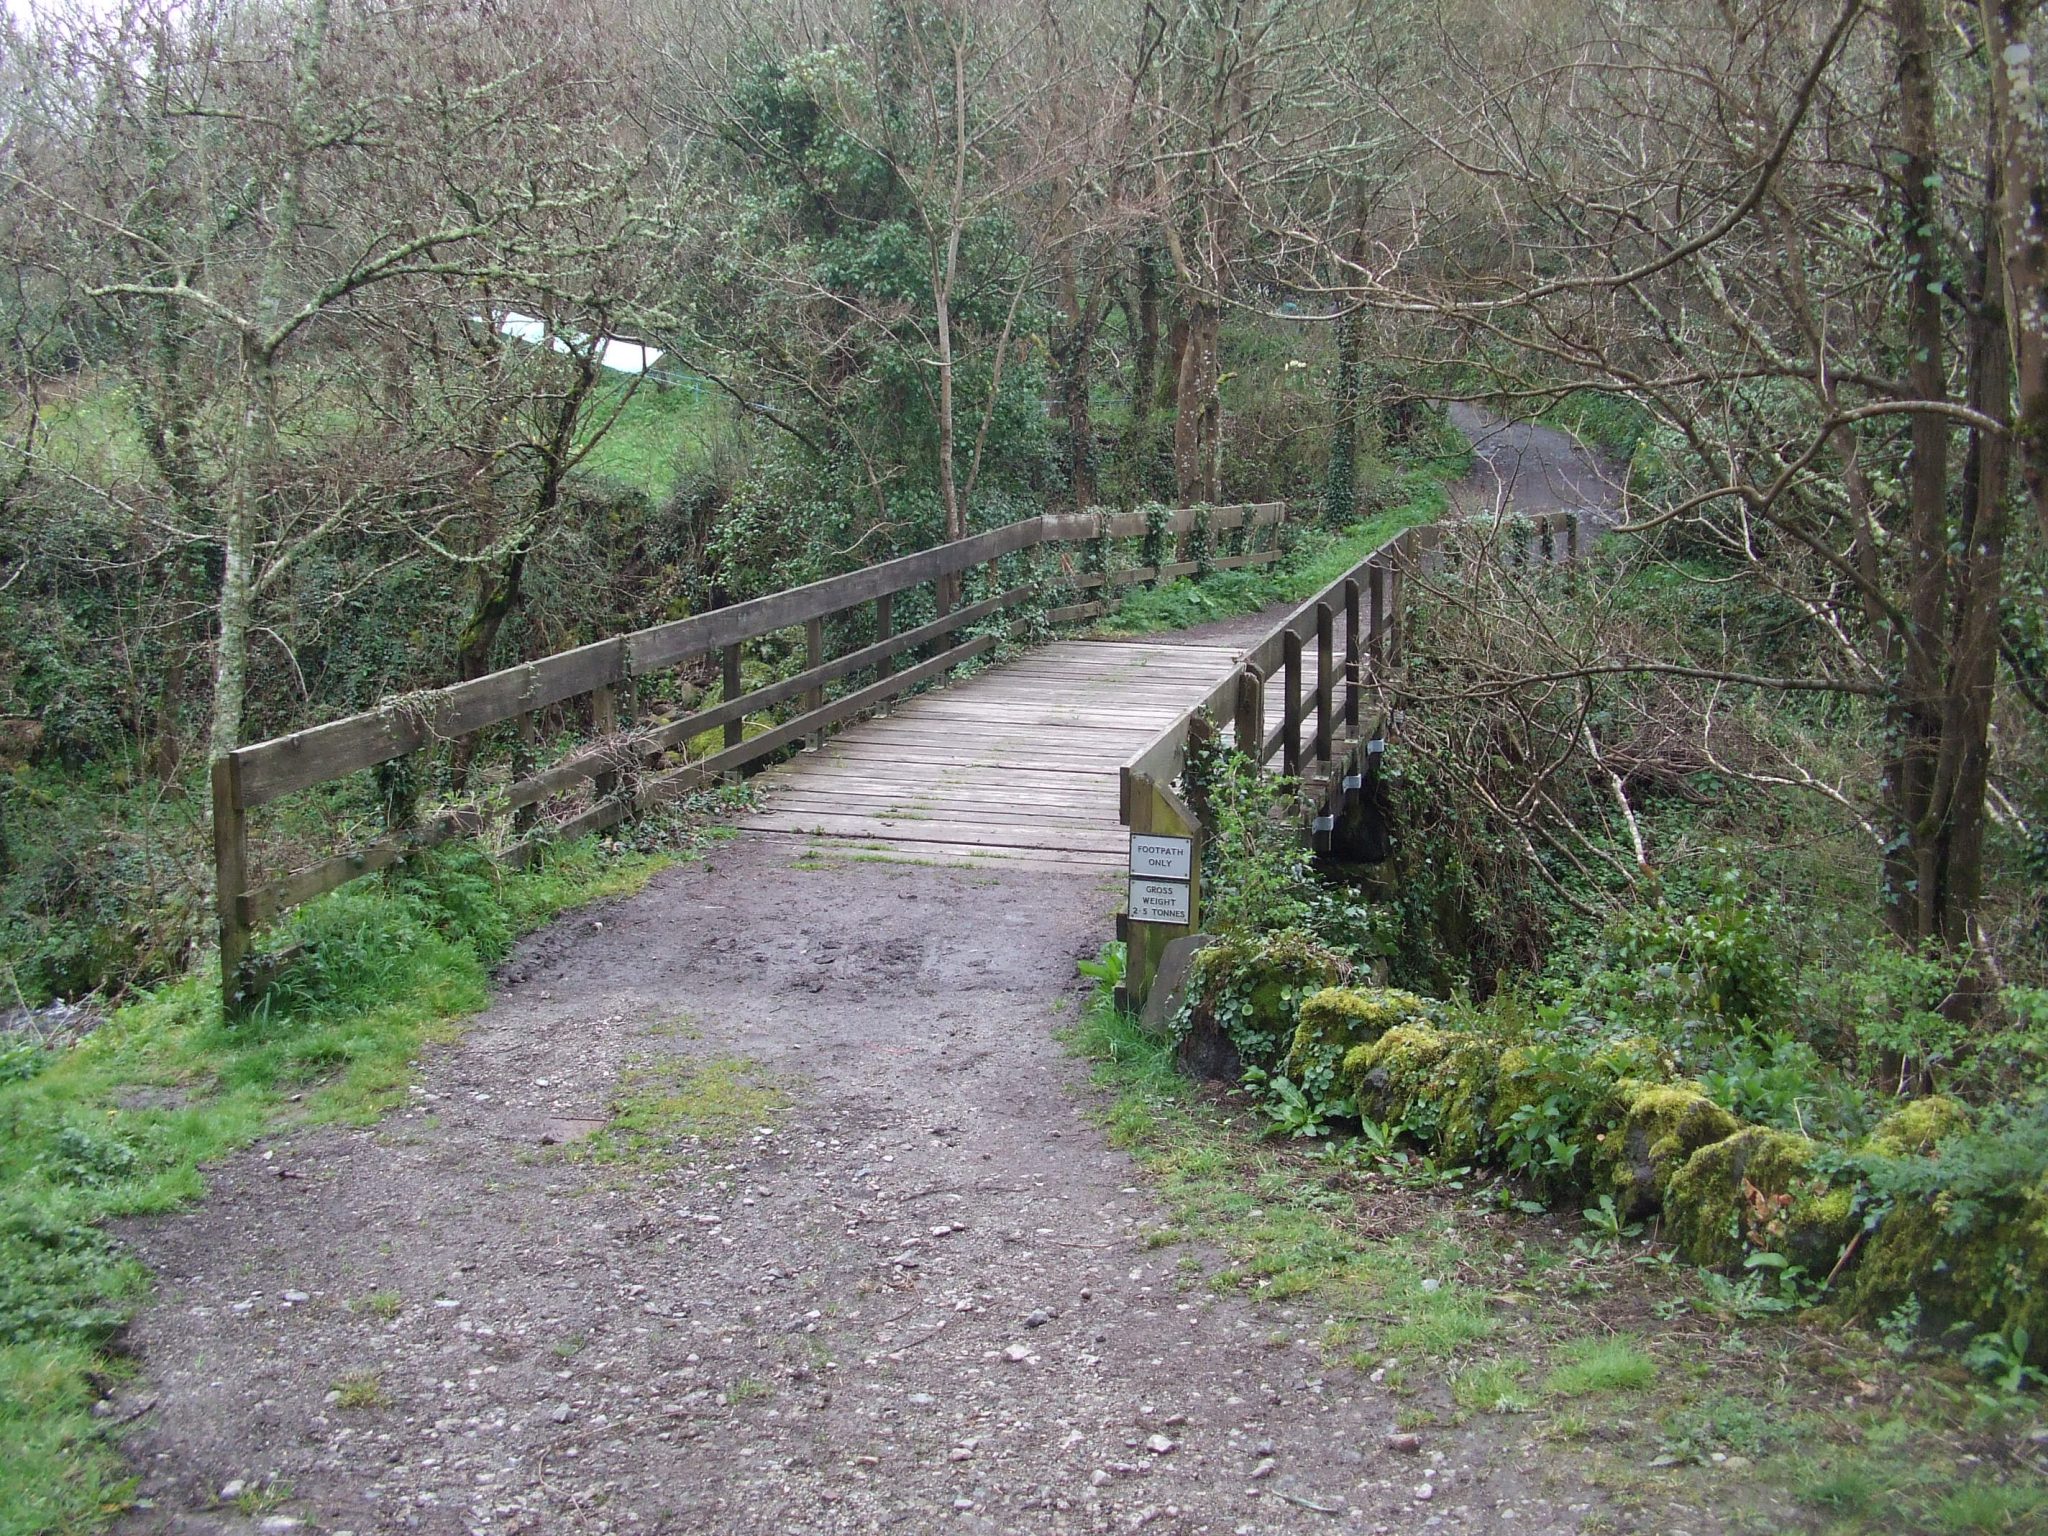 Original bridge